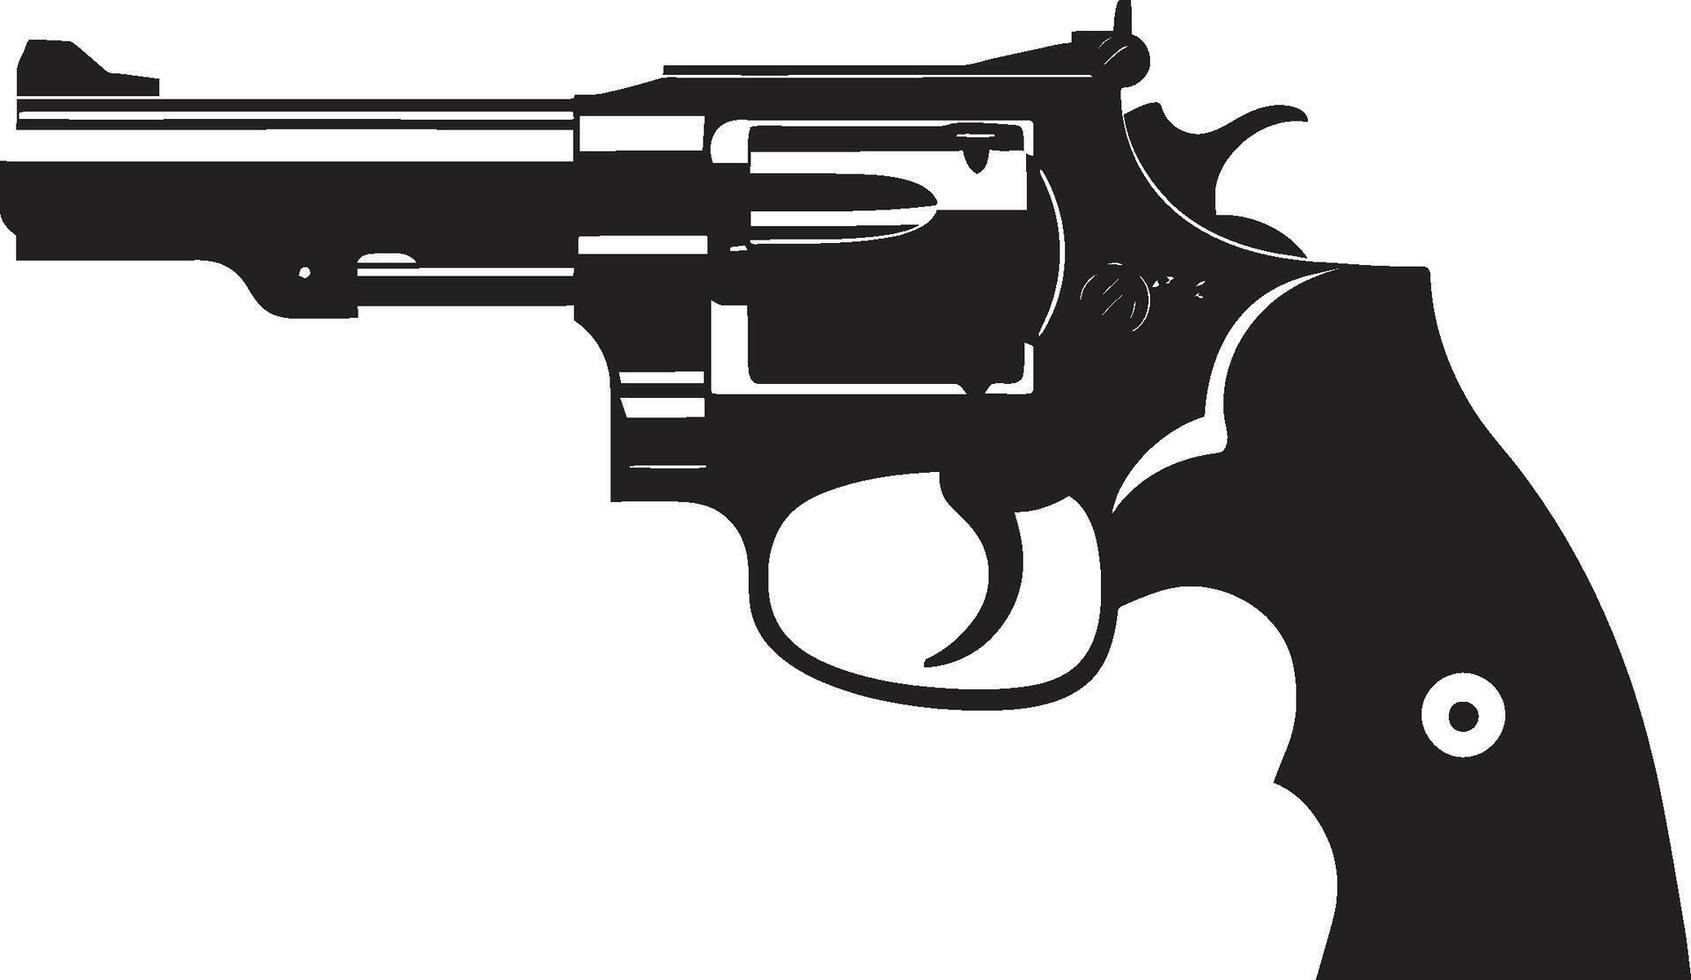 gunmetall glam bricka eleganta revolver vektor för urban överklagande avtryckare elegans insignier chic revolver logotyp för slående påverkan